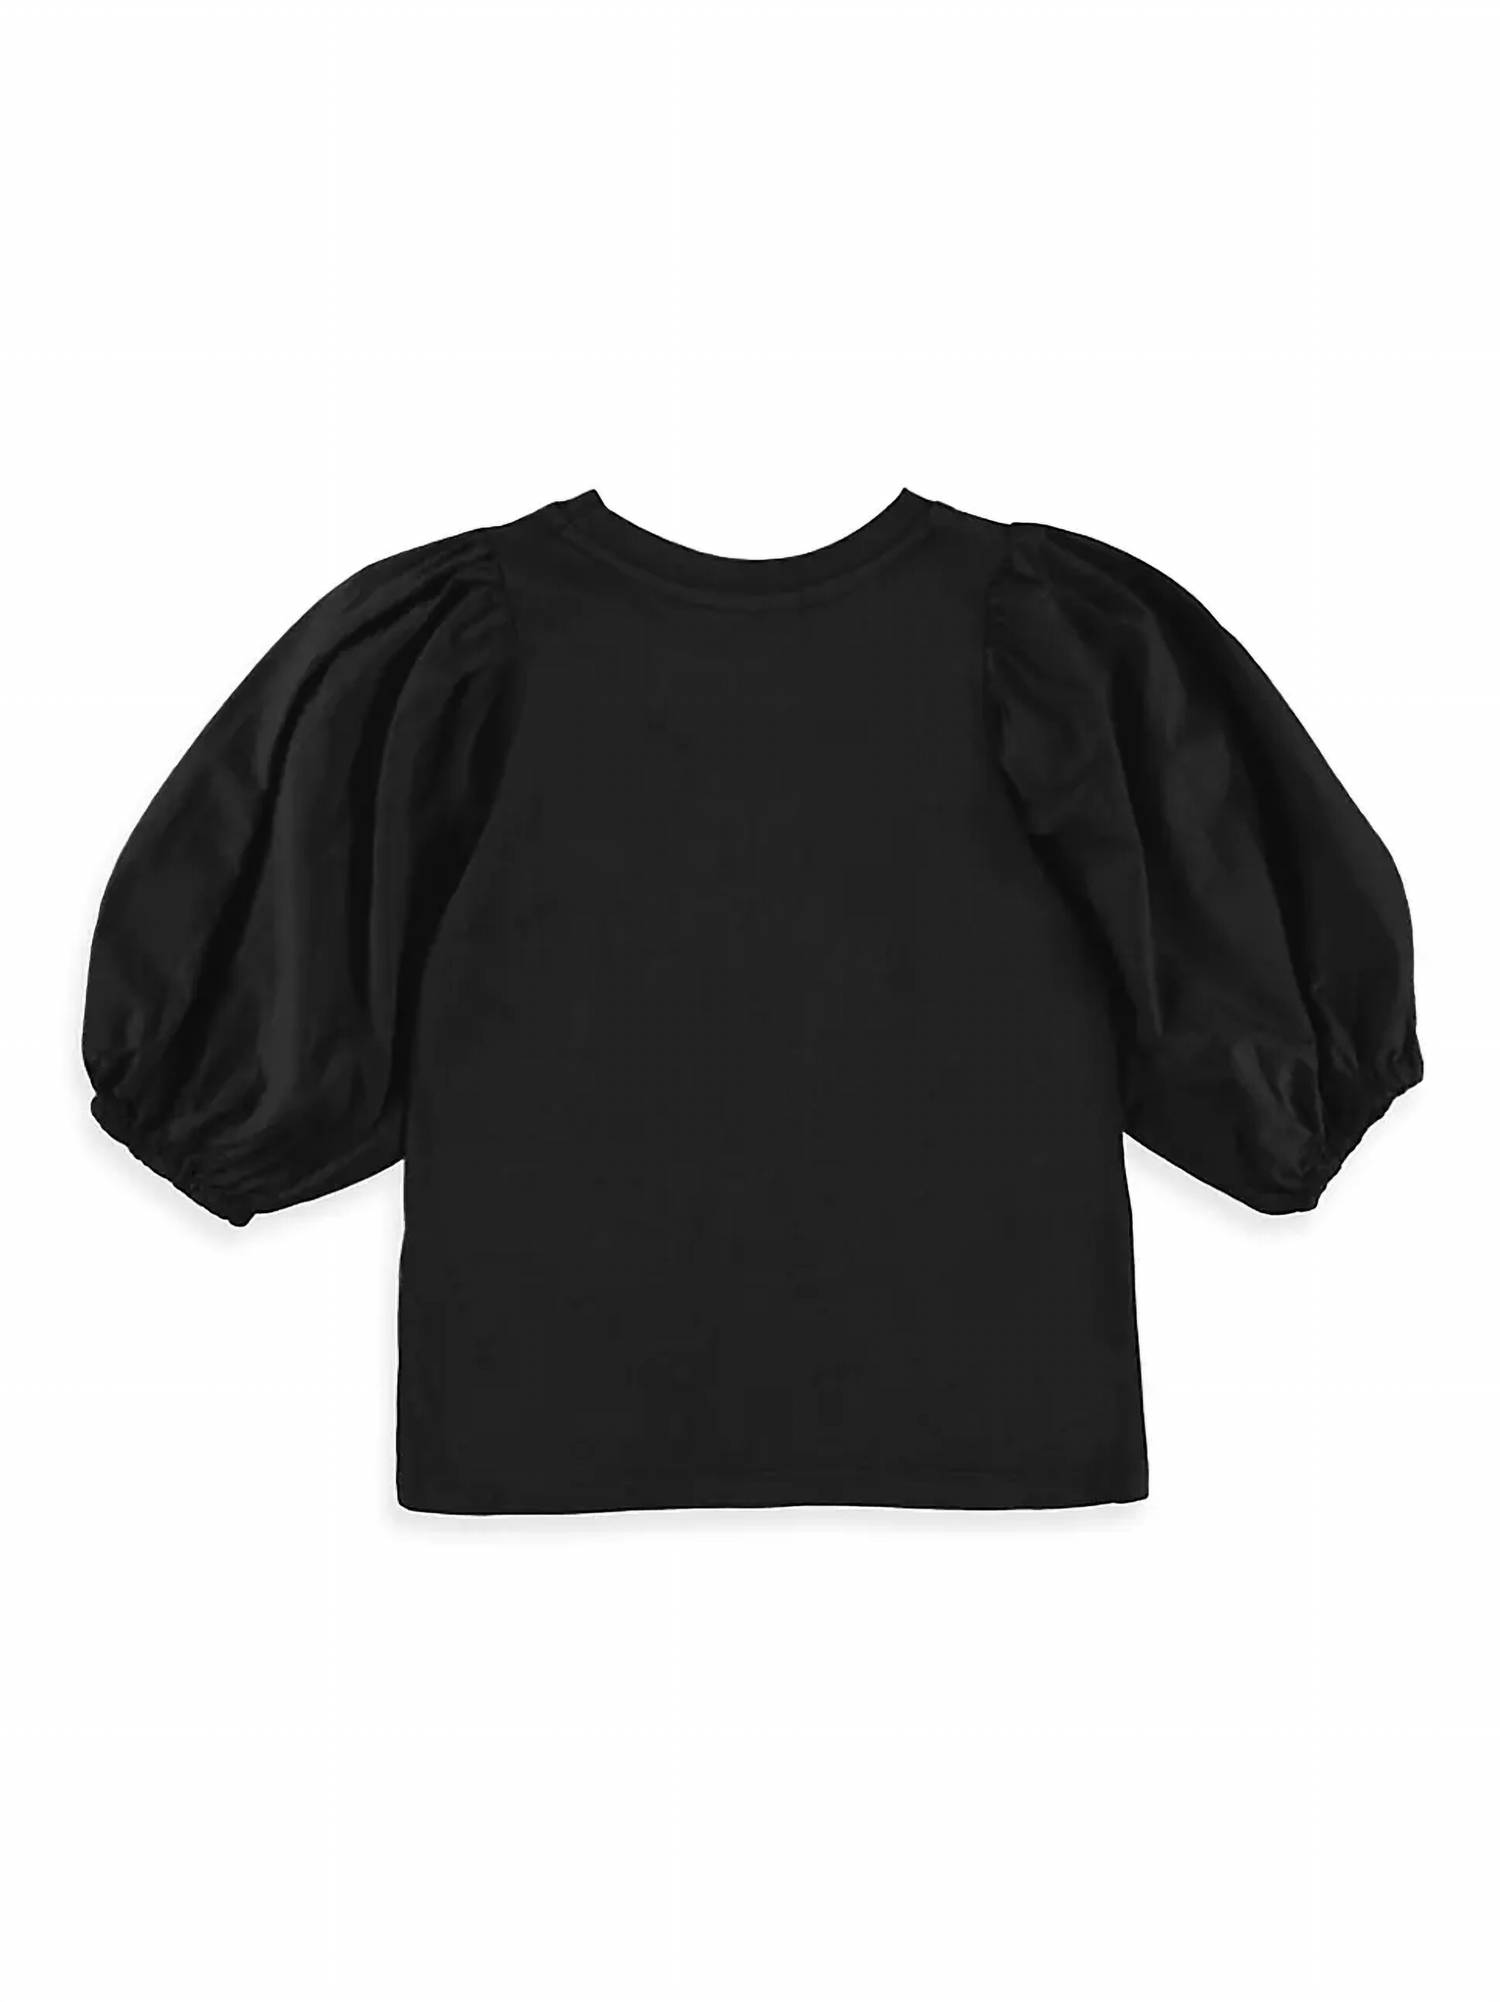 Dl1961 - Kids&apos; Girl&apos;s Kayla Shirt In Black